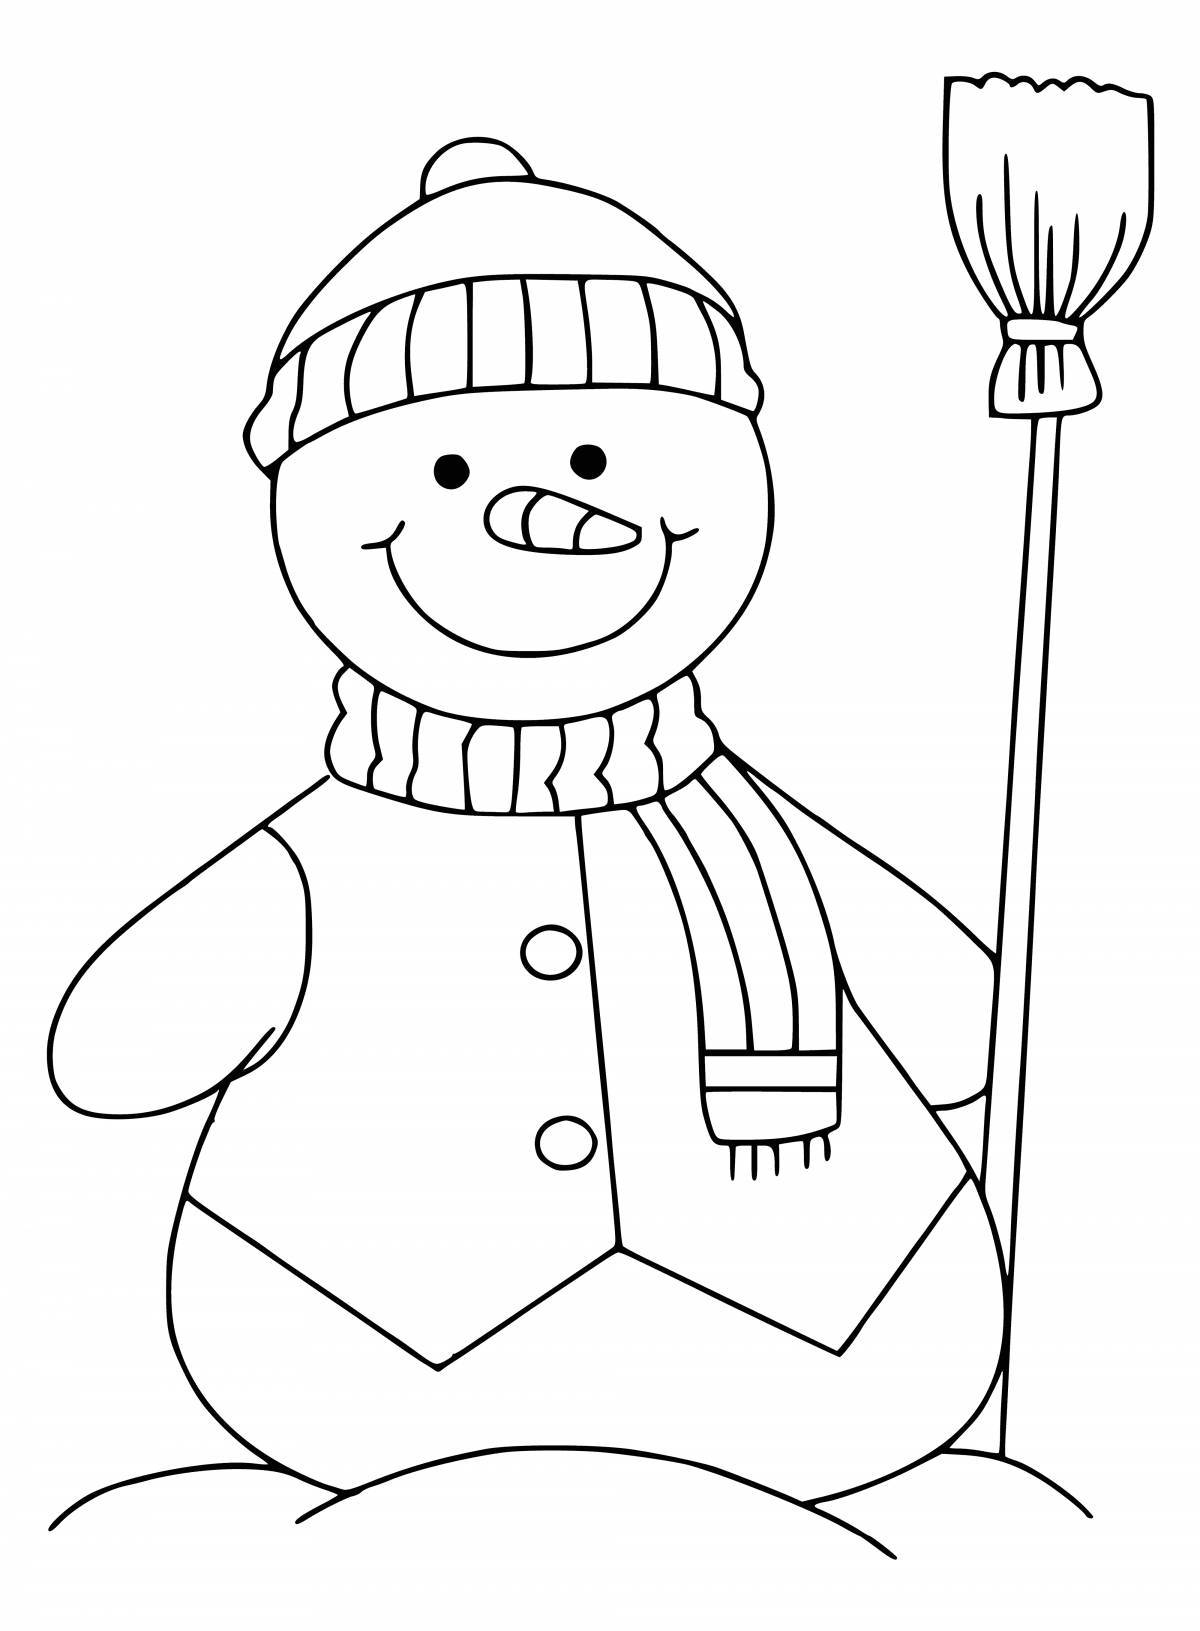 Милый снеговик раскраски для детей